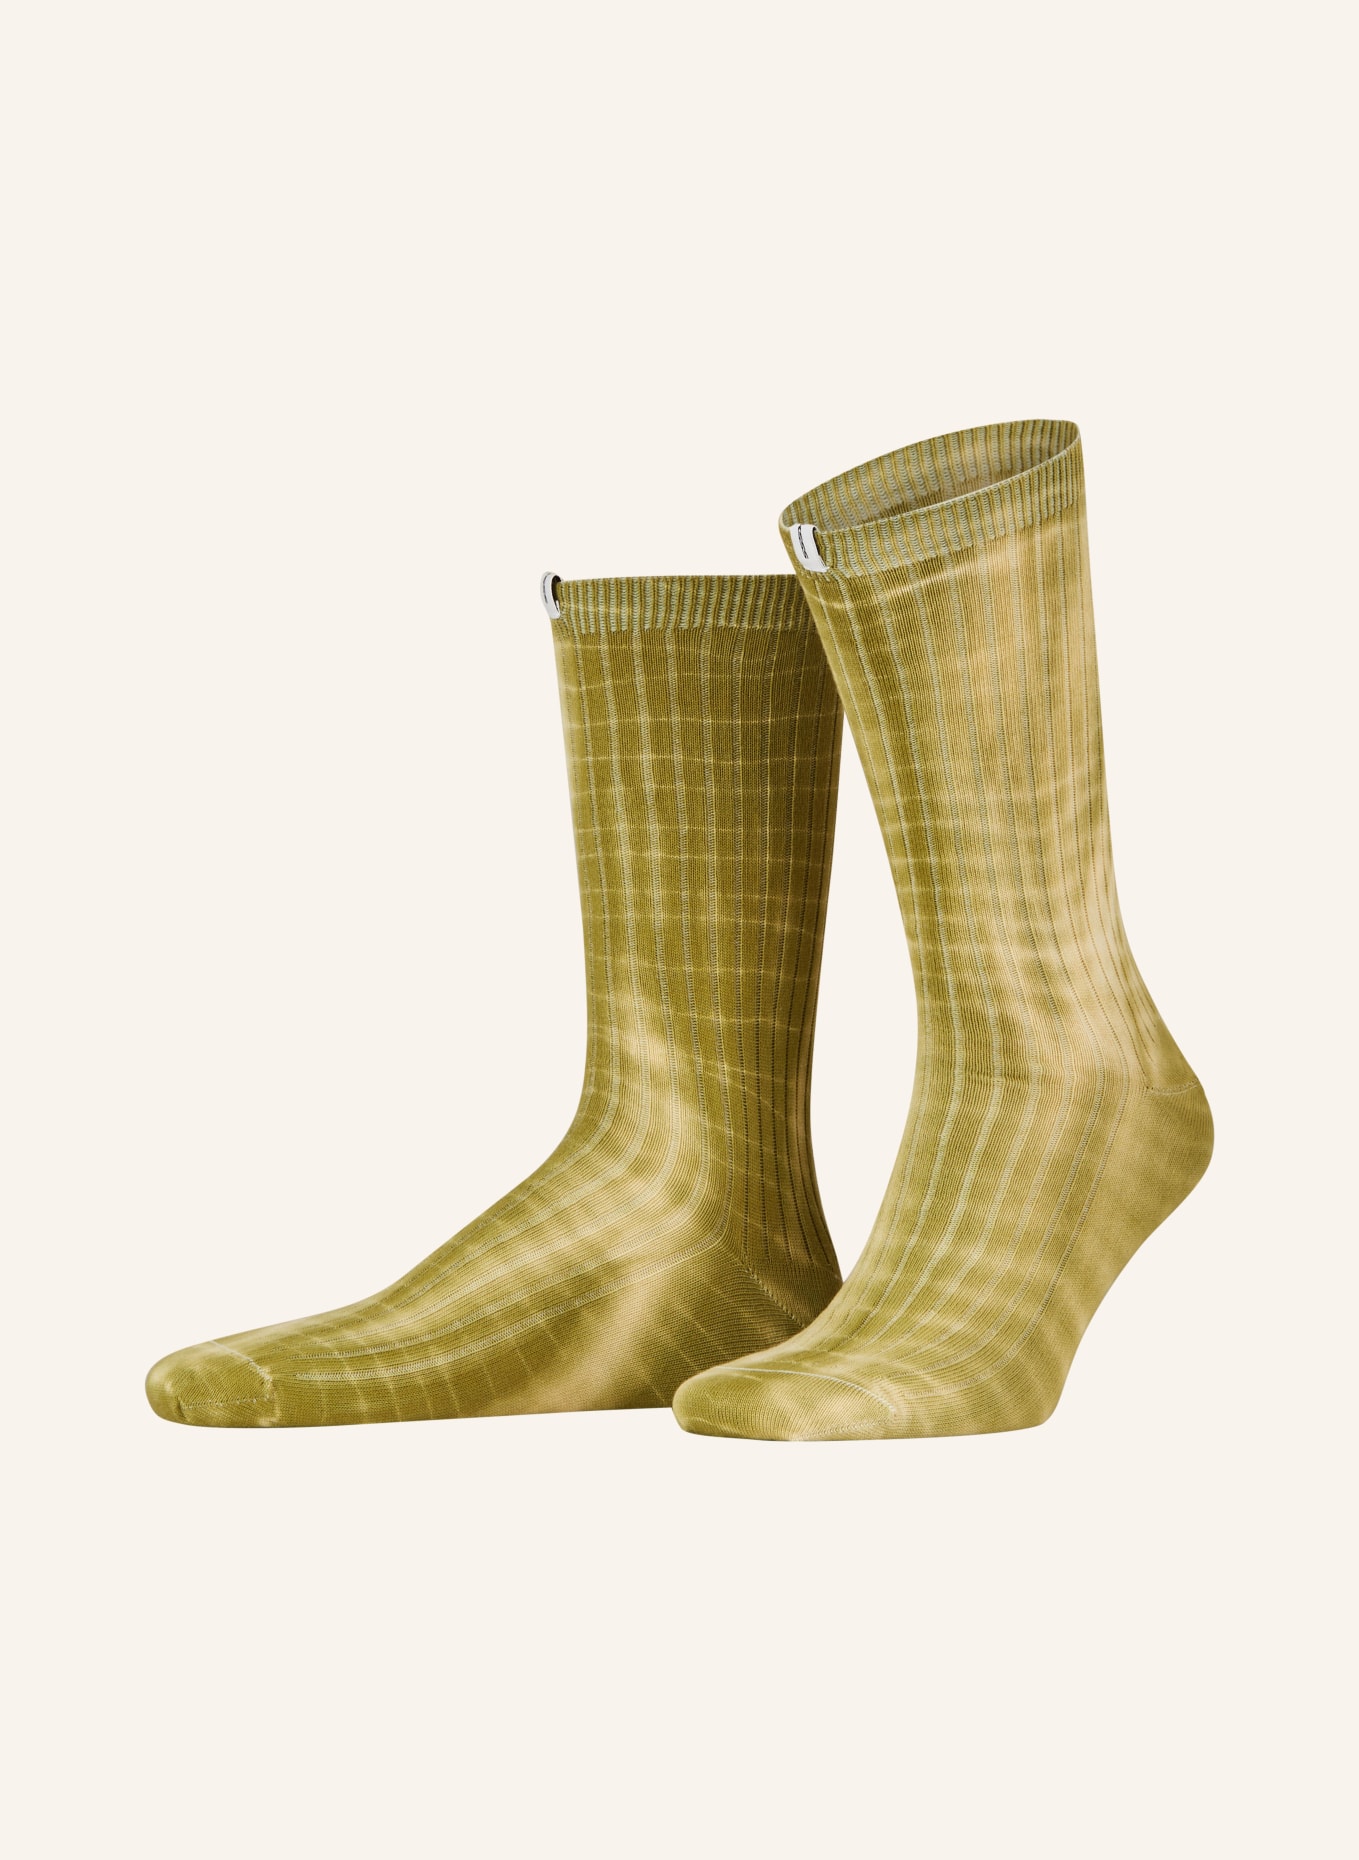 SOCKSSS Socks SNAKE, Color: SNAKE (Image 1)